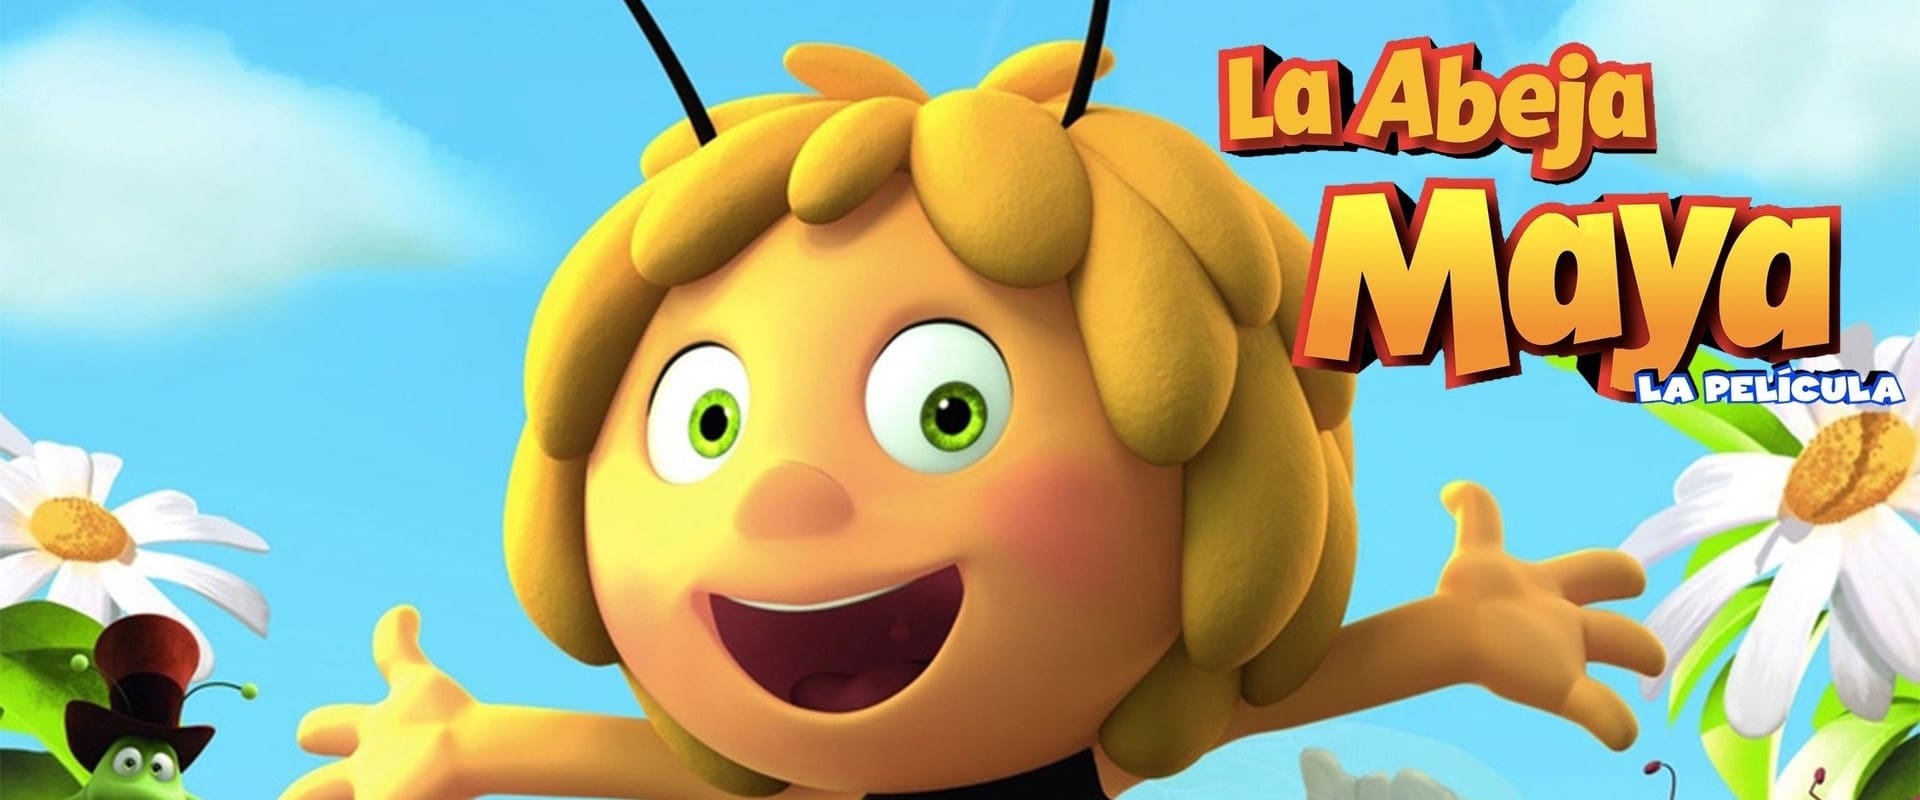 L'ape Maia - Il film